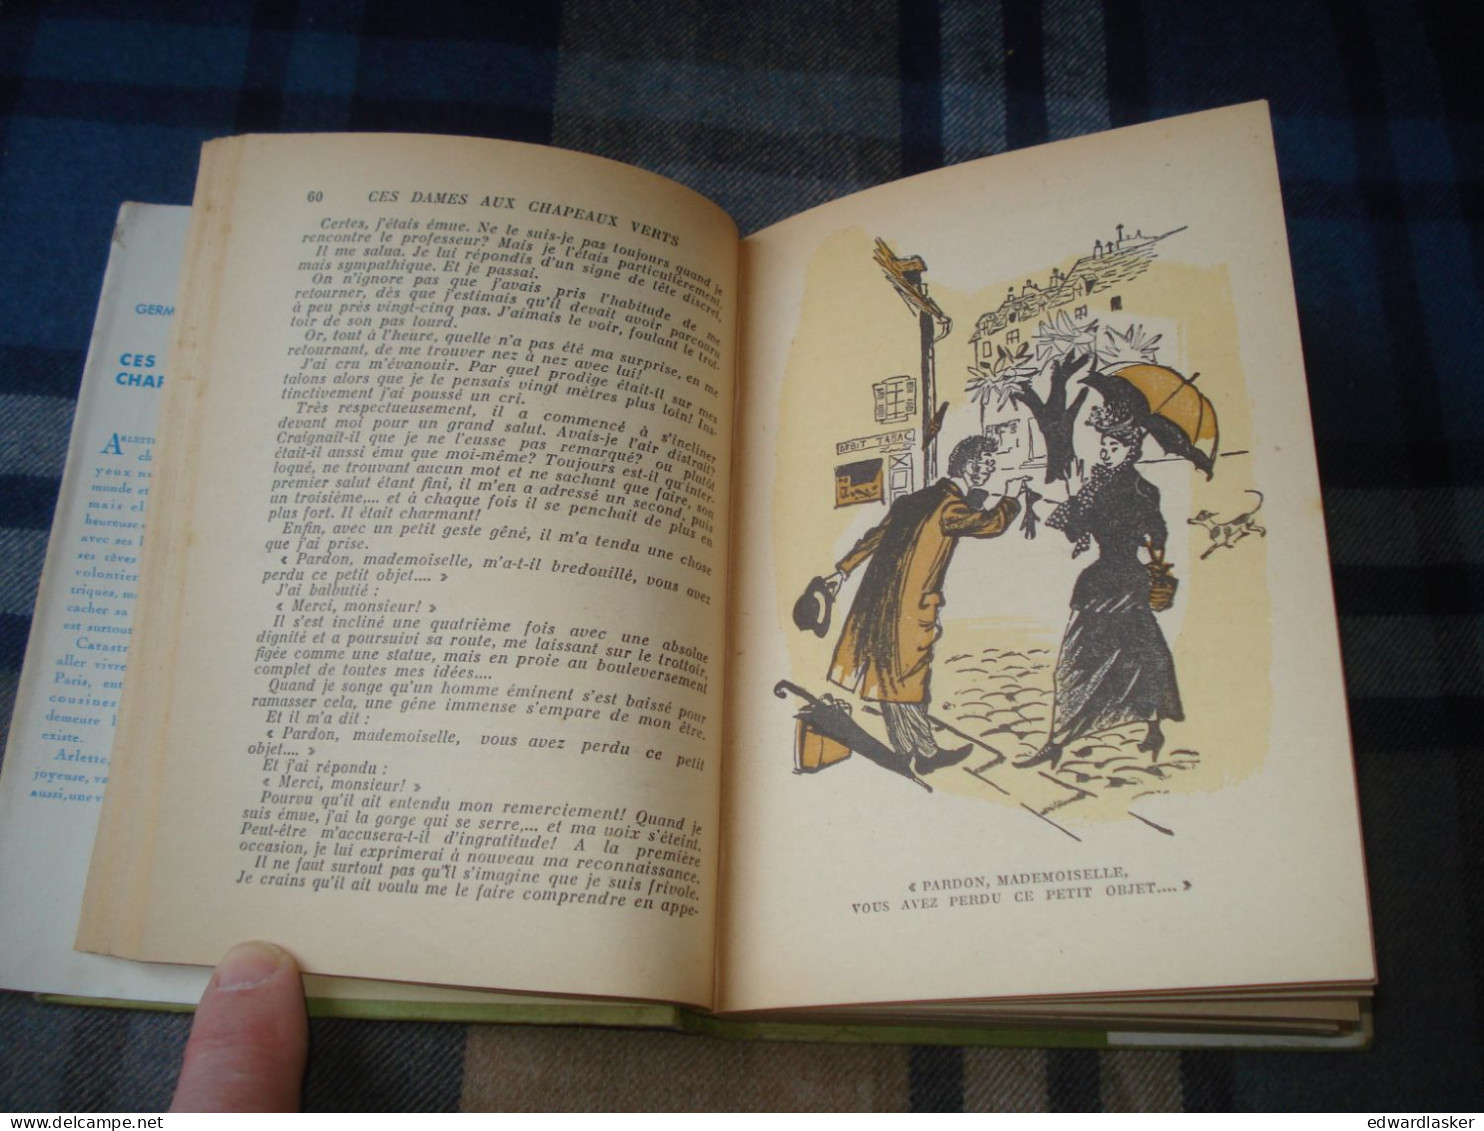 BIBLIOTHEQUE VERTE : Ces Dames Aux Chapeaux Verts /Germaine Acremant - Jaquette 1952 - Jacques Demachy - Biblioteca Verde